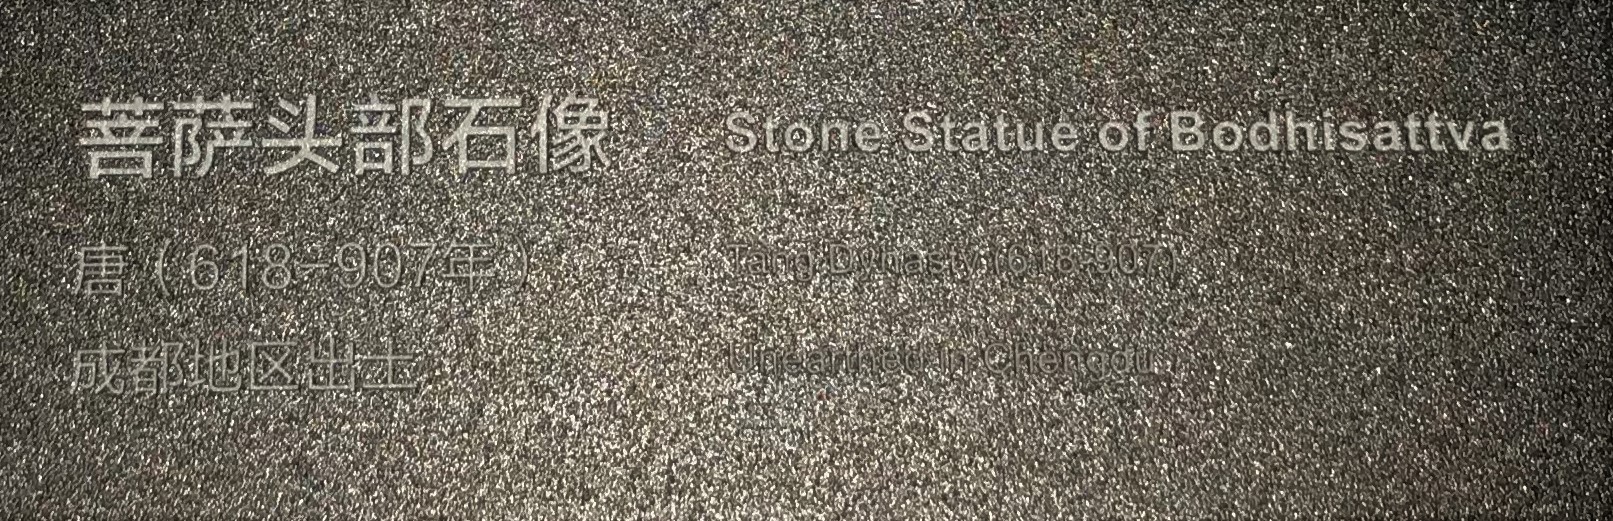 菩薩頭石像-隋唐五代宋元時代-常設展F３-成都博物館